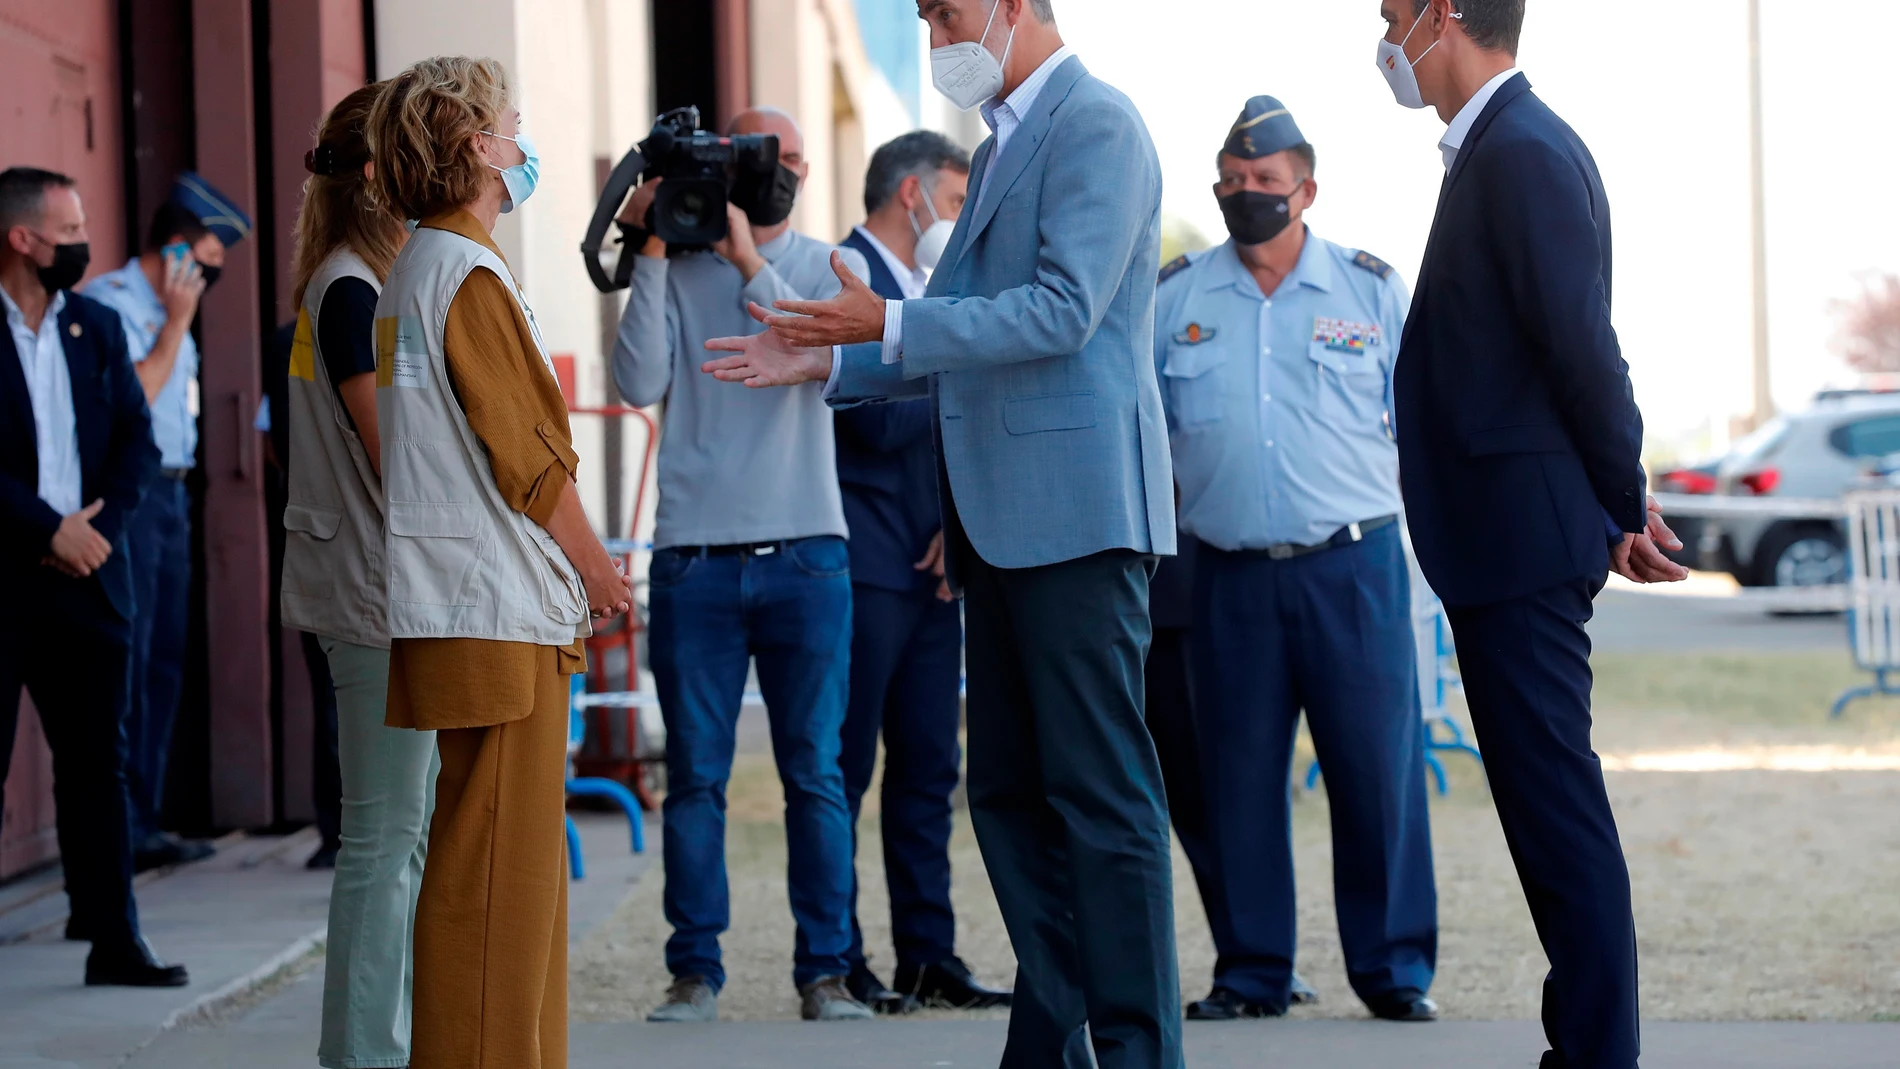 El rey Felipe VI y el presidente del Gobierno, Pedro Sánchez, conversan con varias personas durante su visita al centro de acogida temporal instalado en la base de Torrejón de Ardoz